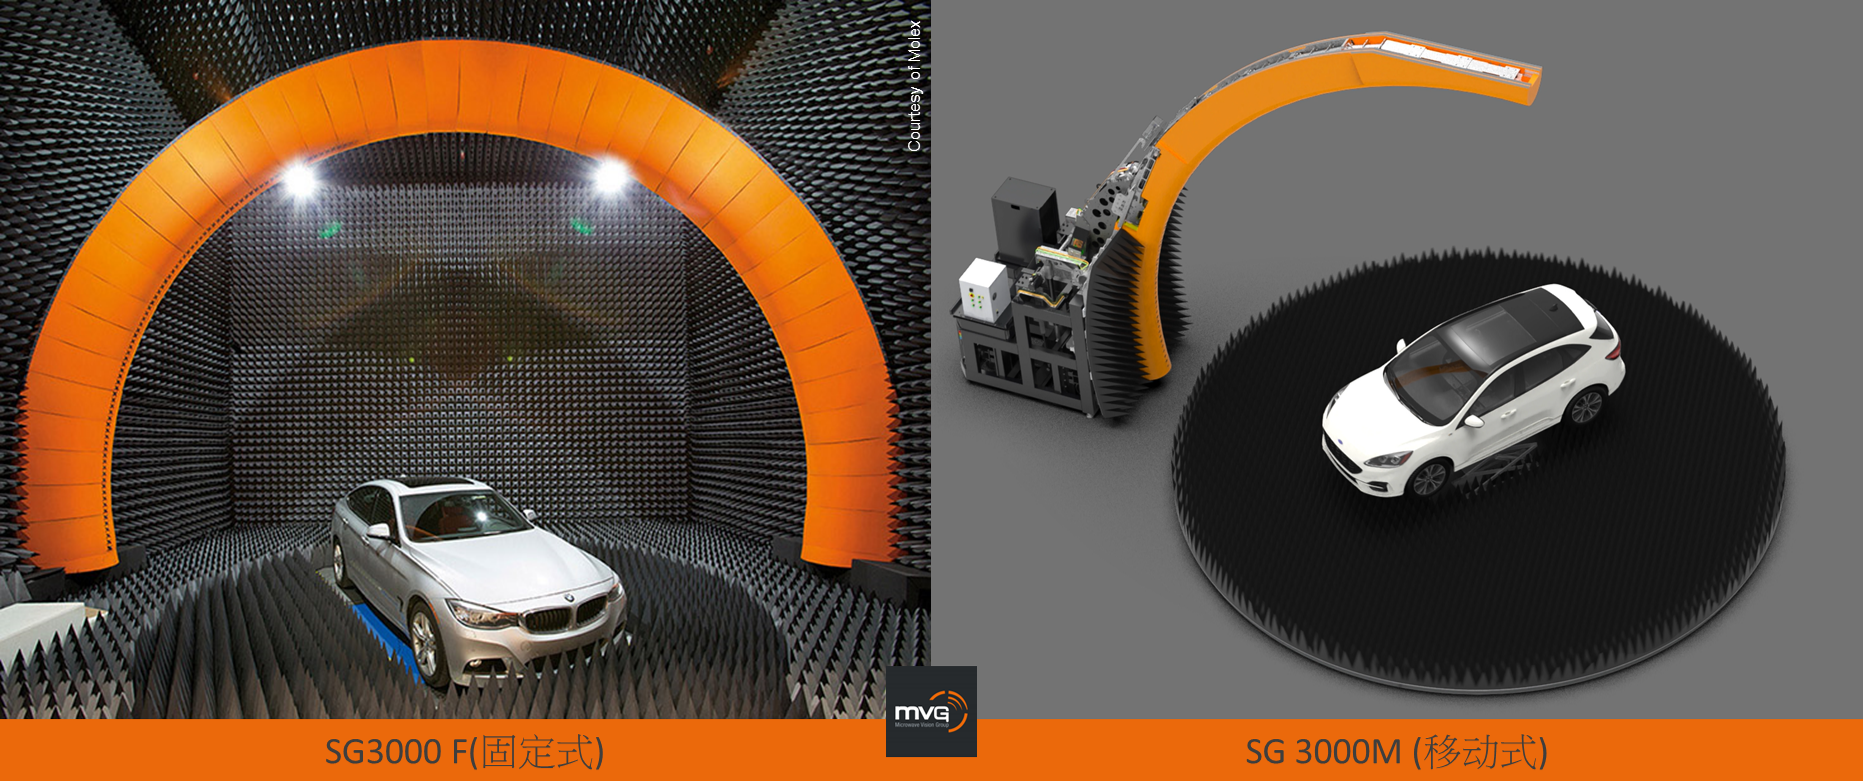 MVG測試測量解決方案確保汽車天線通信性能的安全、穩定和高效